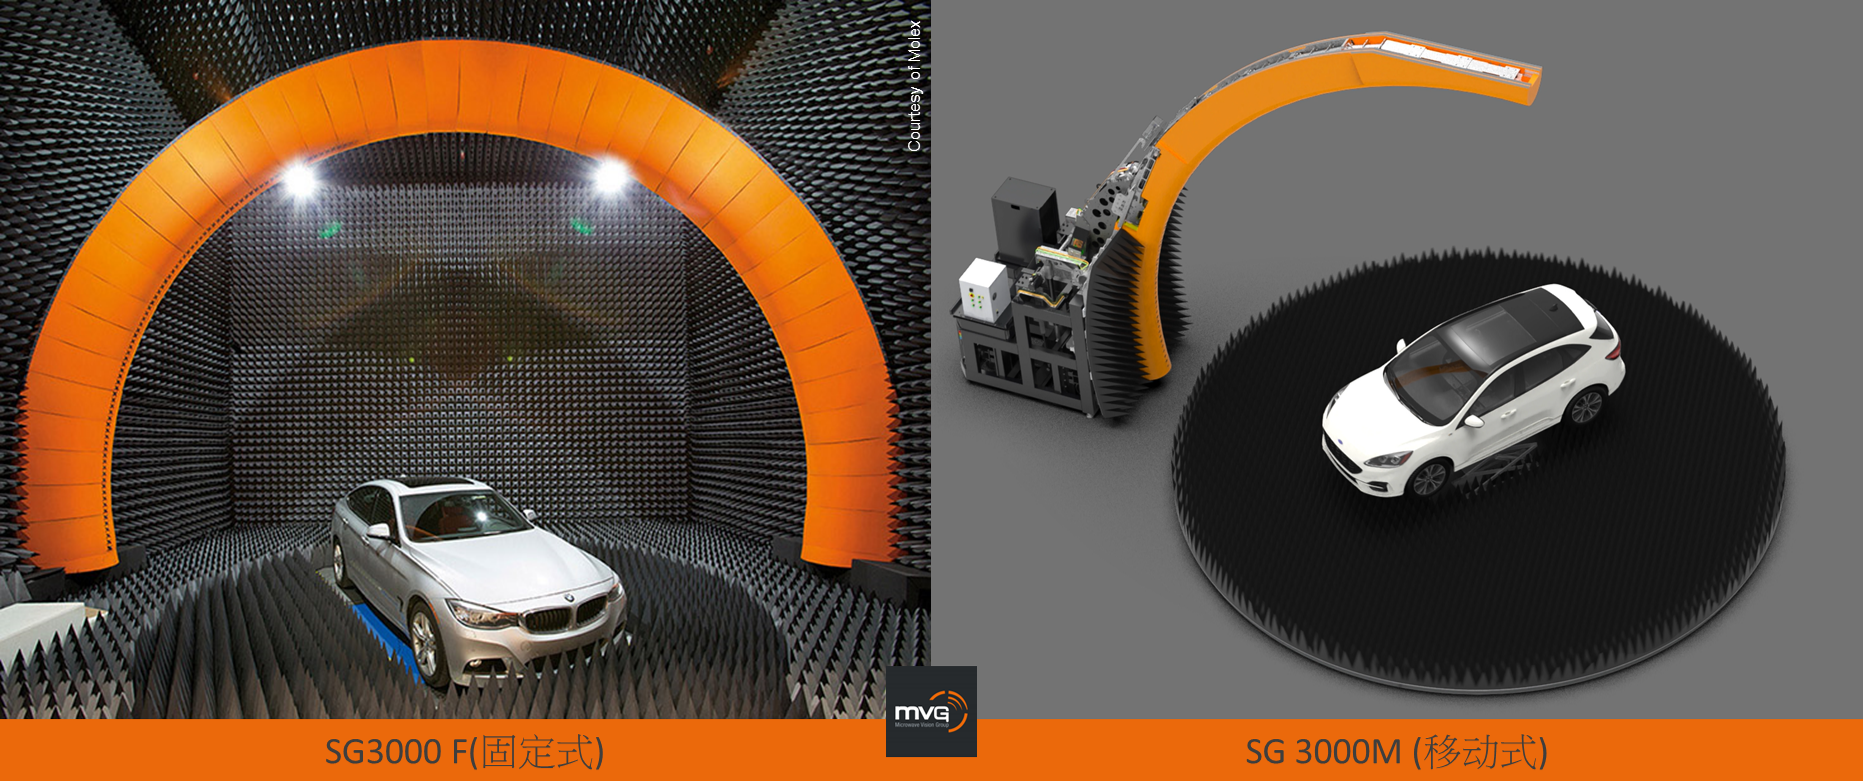 MVG測試測量解決方案確保汽車天線通信性能的安全、穩定和高效